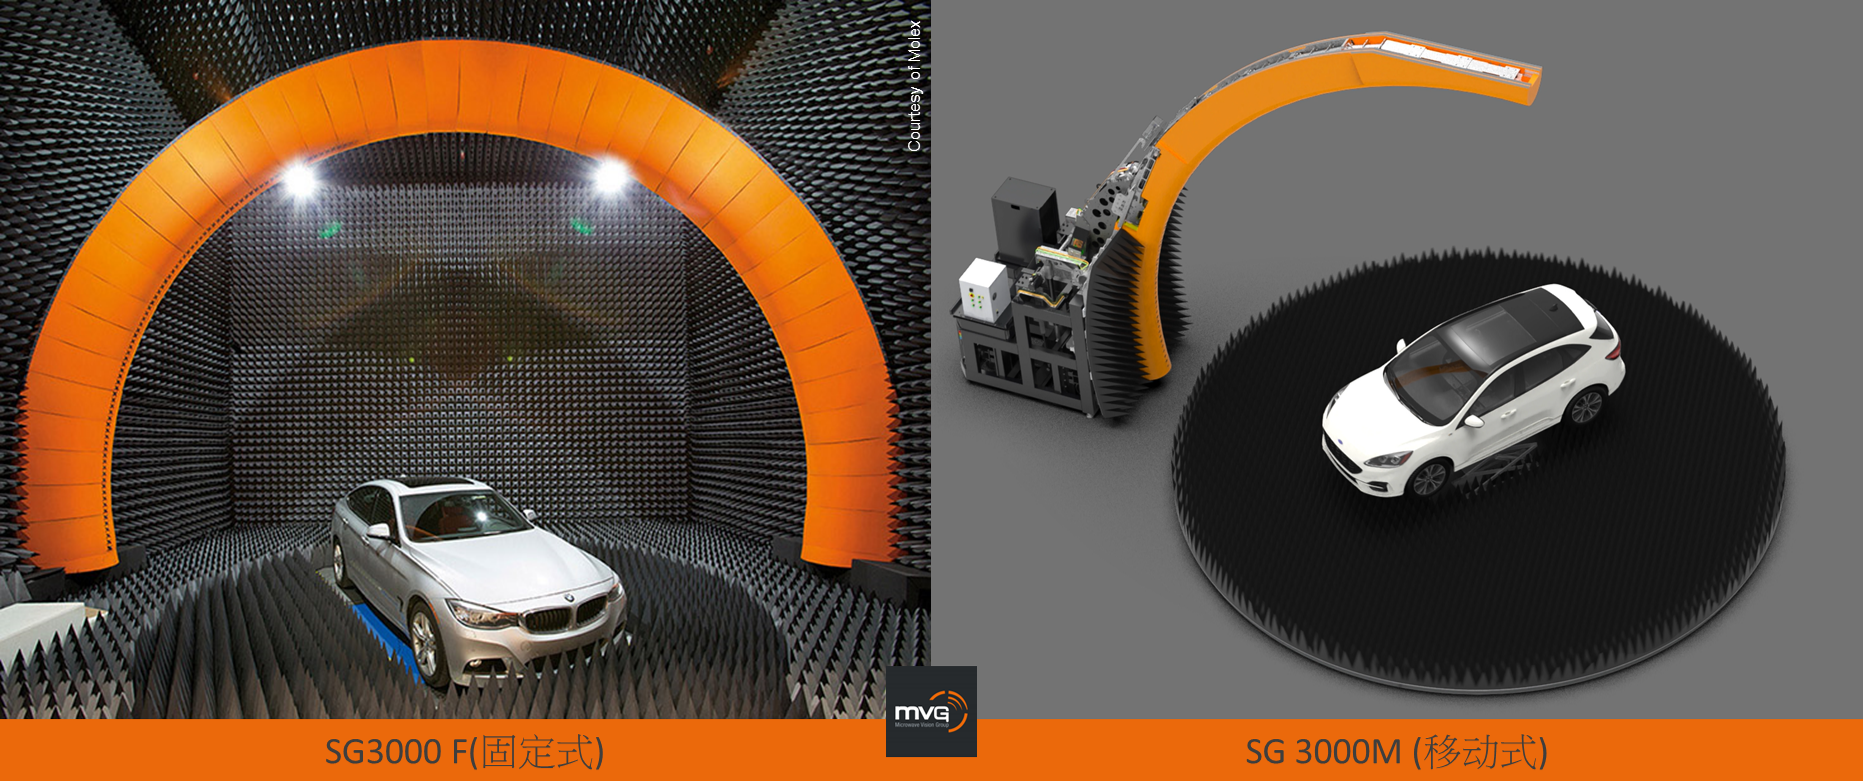 MVG測試測量解決方案確保汽車天線通信性能的安全、穩定和高效